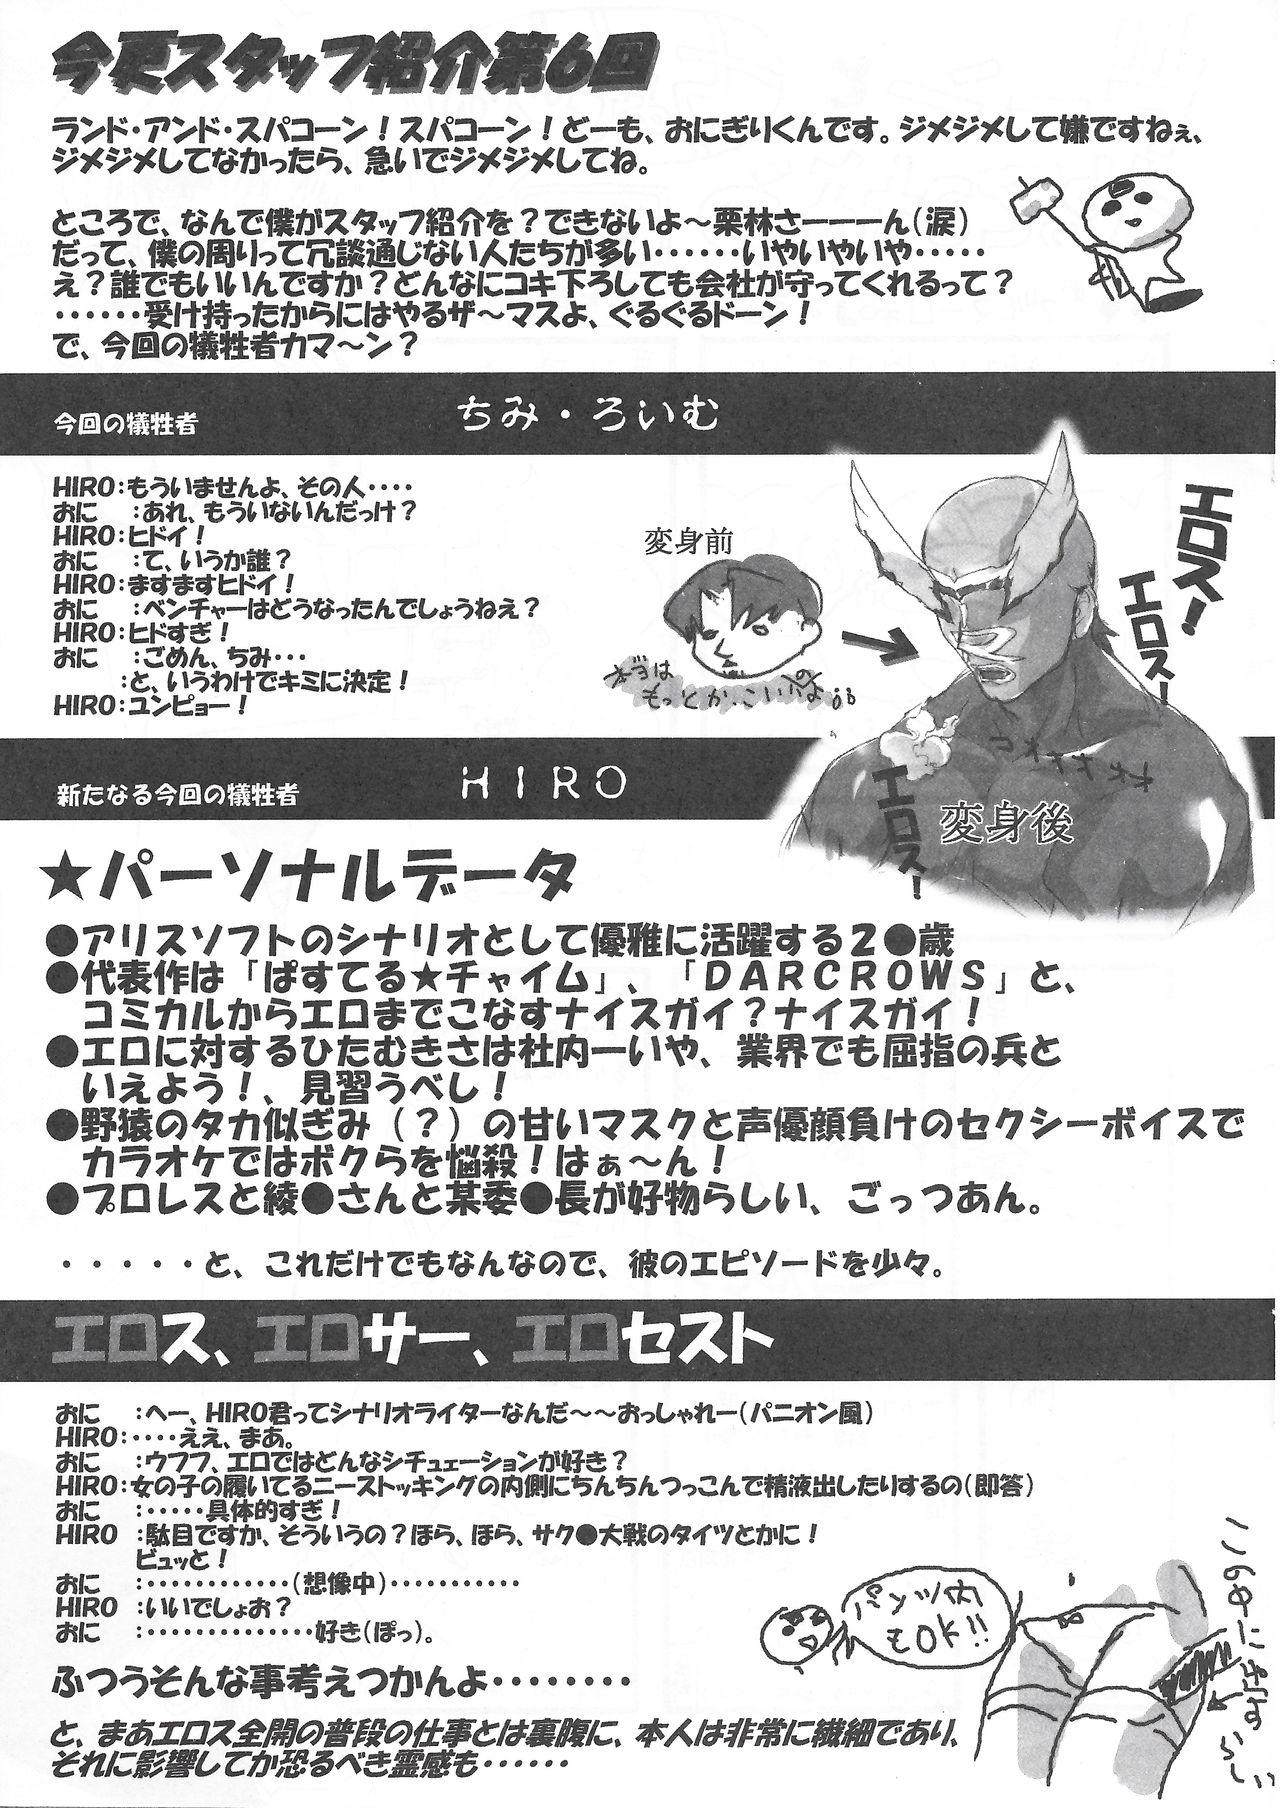 Arisu no Denchi Bakudan Vol. 11 11